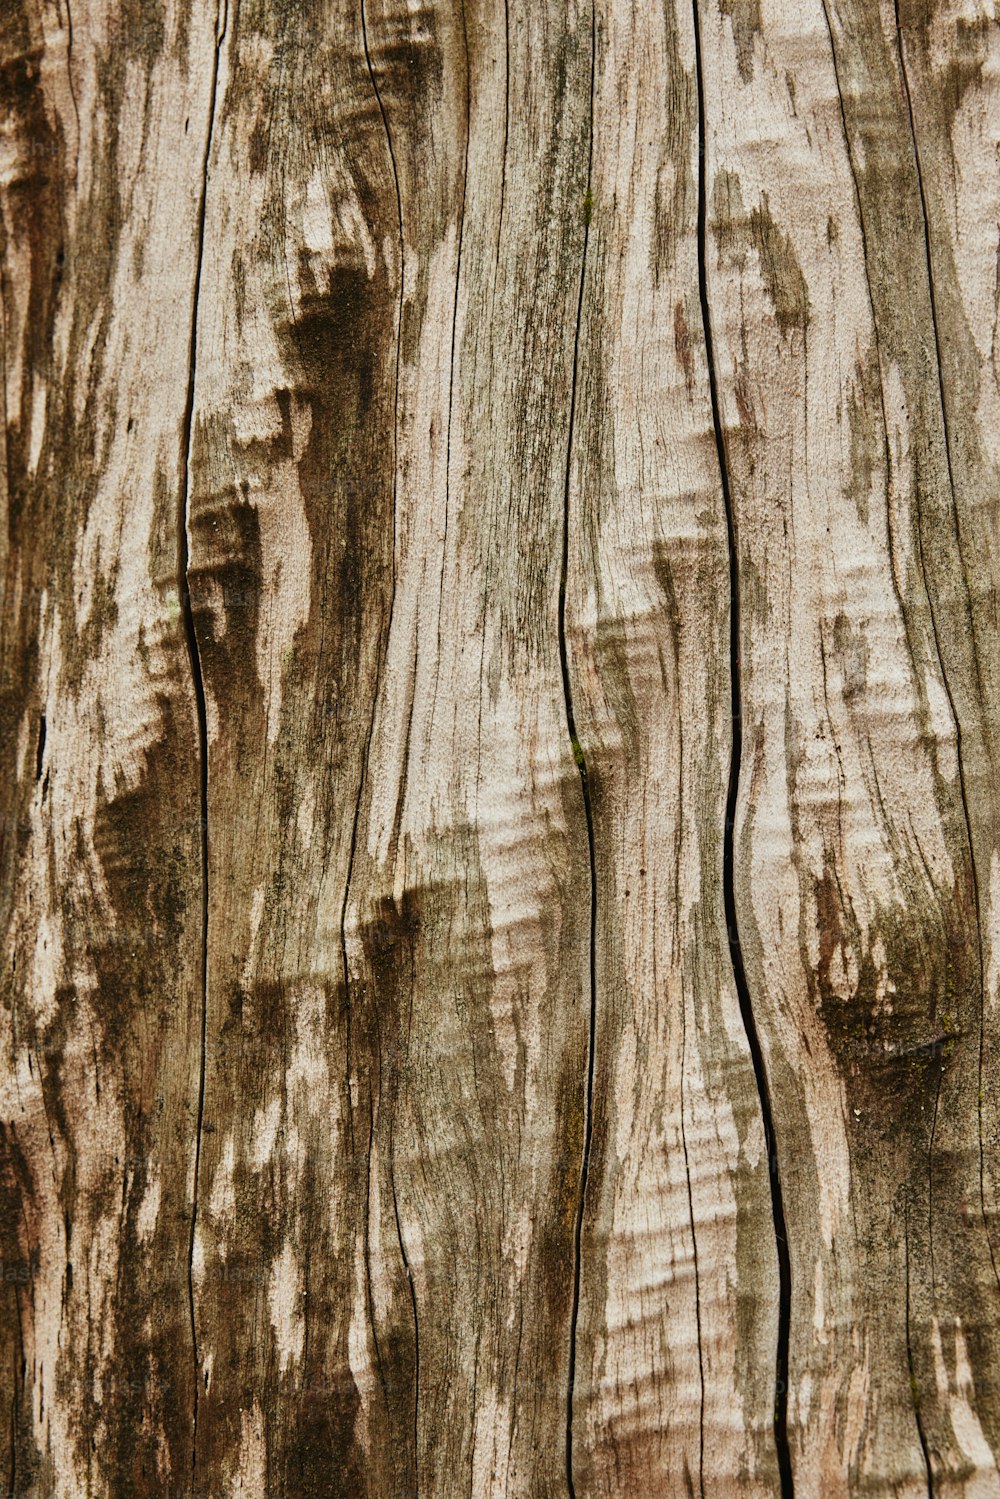 Un primo piano di un tronco d'albero con venature del legno